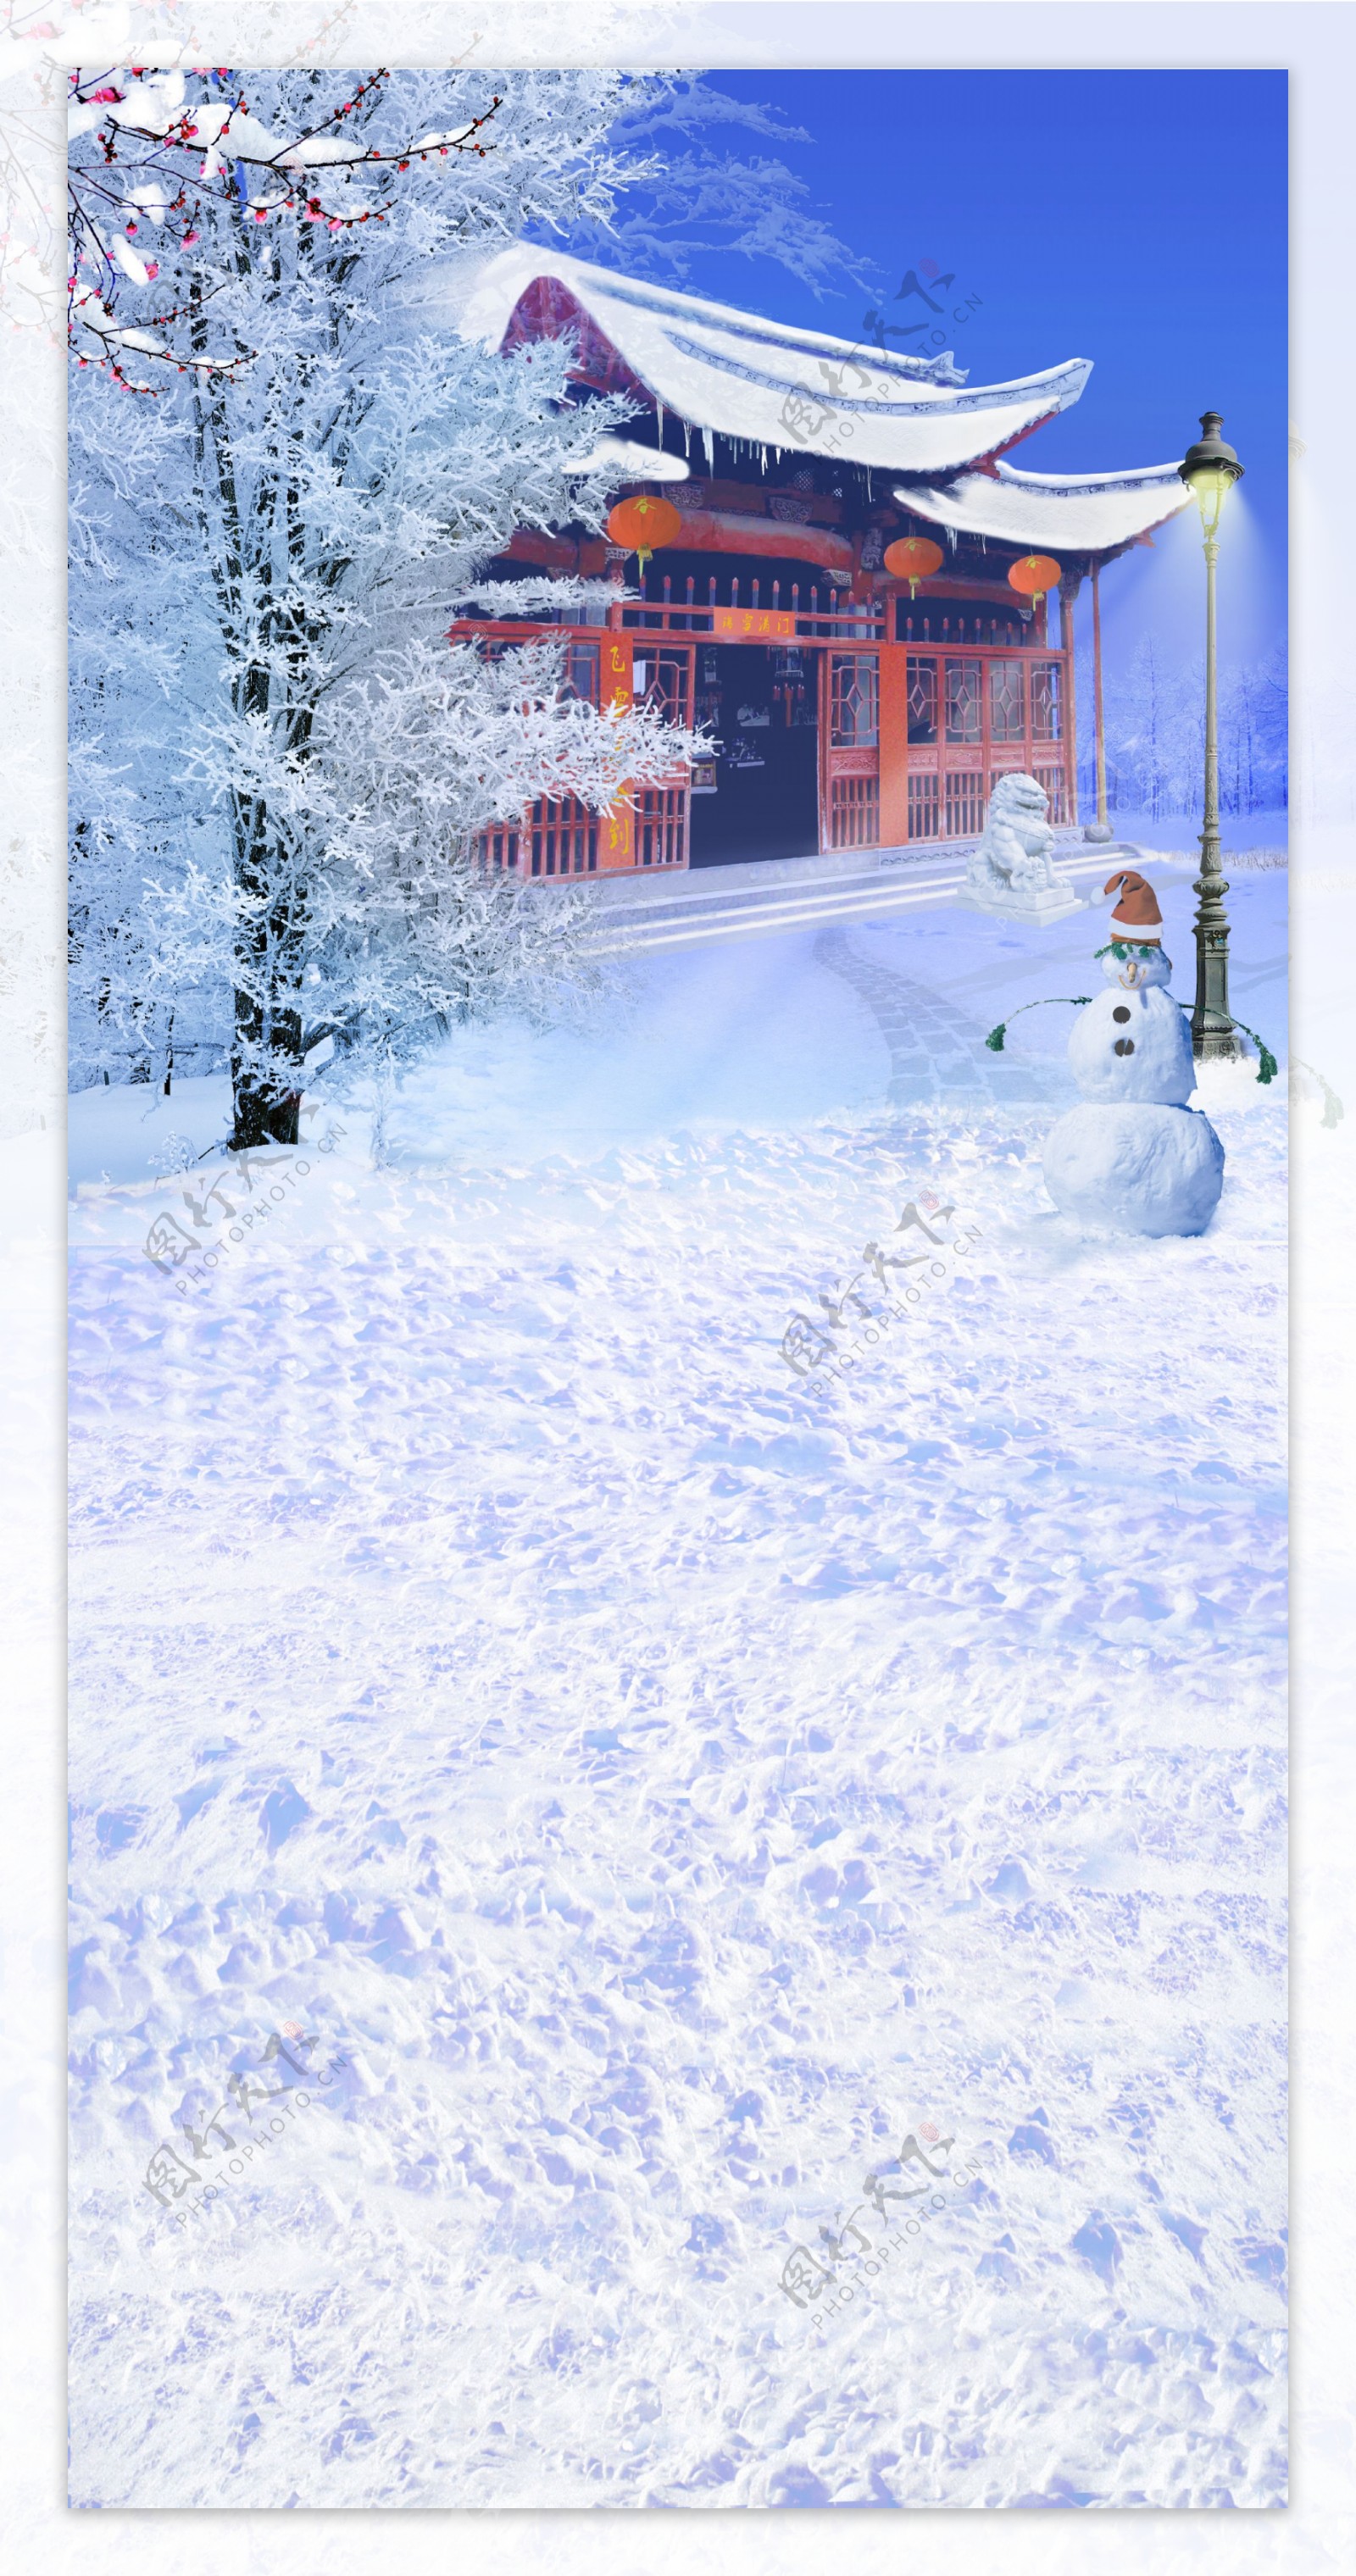 落满积雪的房子等影楼摄影背景图片